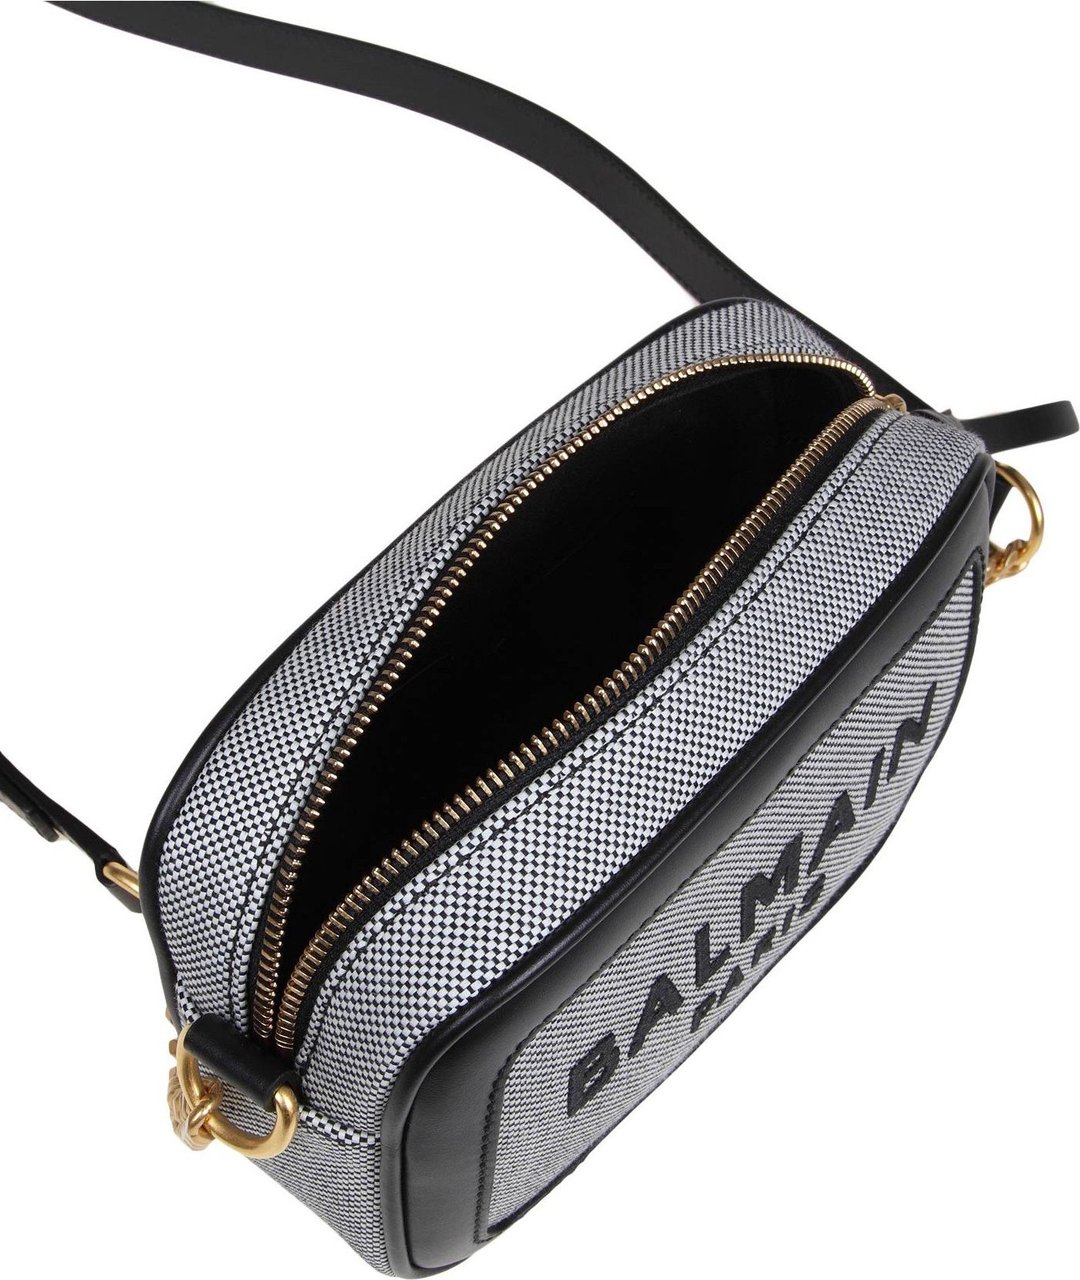 Balmain Balmain b-army camera bag case in canvas color white/black Zwart